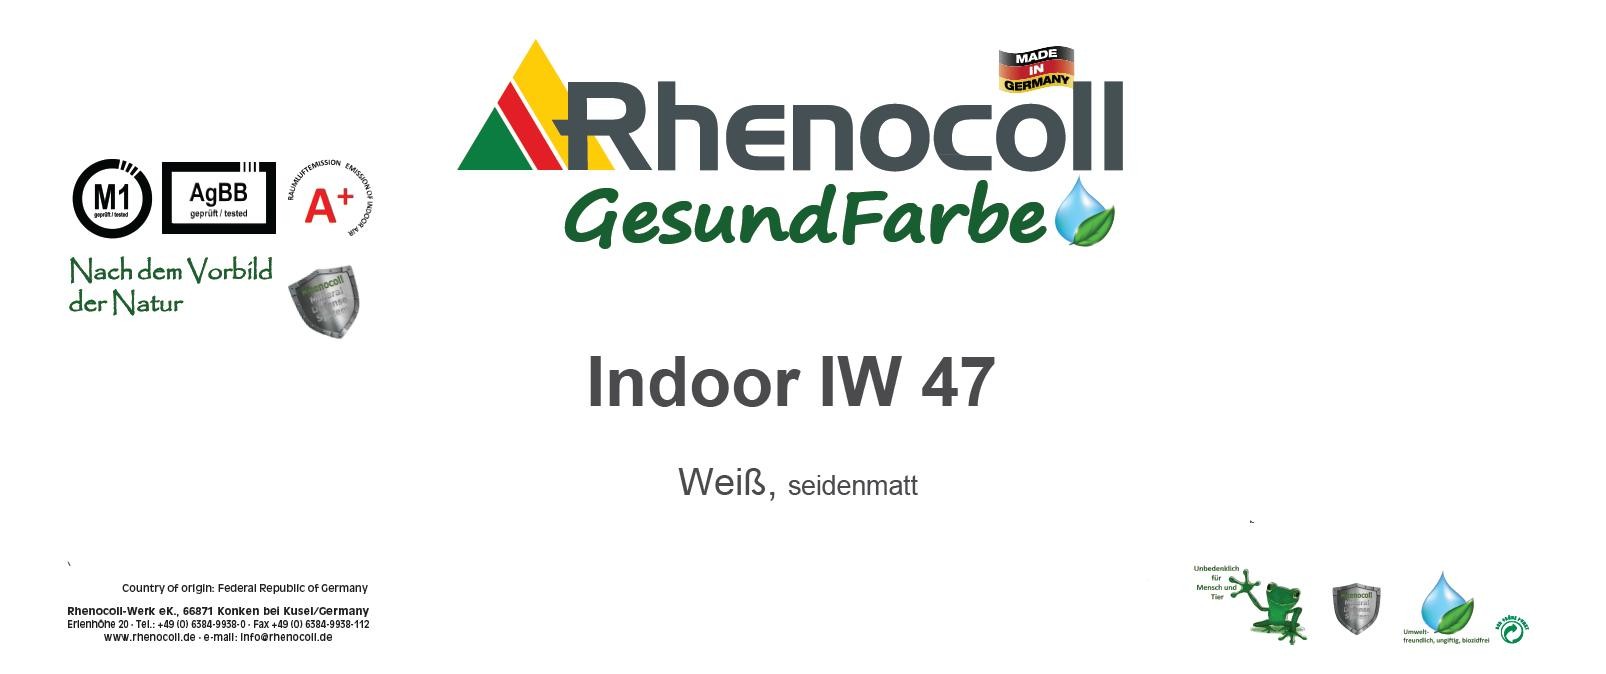 Rhenocoll Indoor IW 47